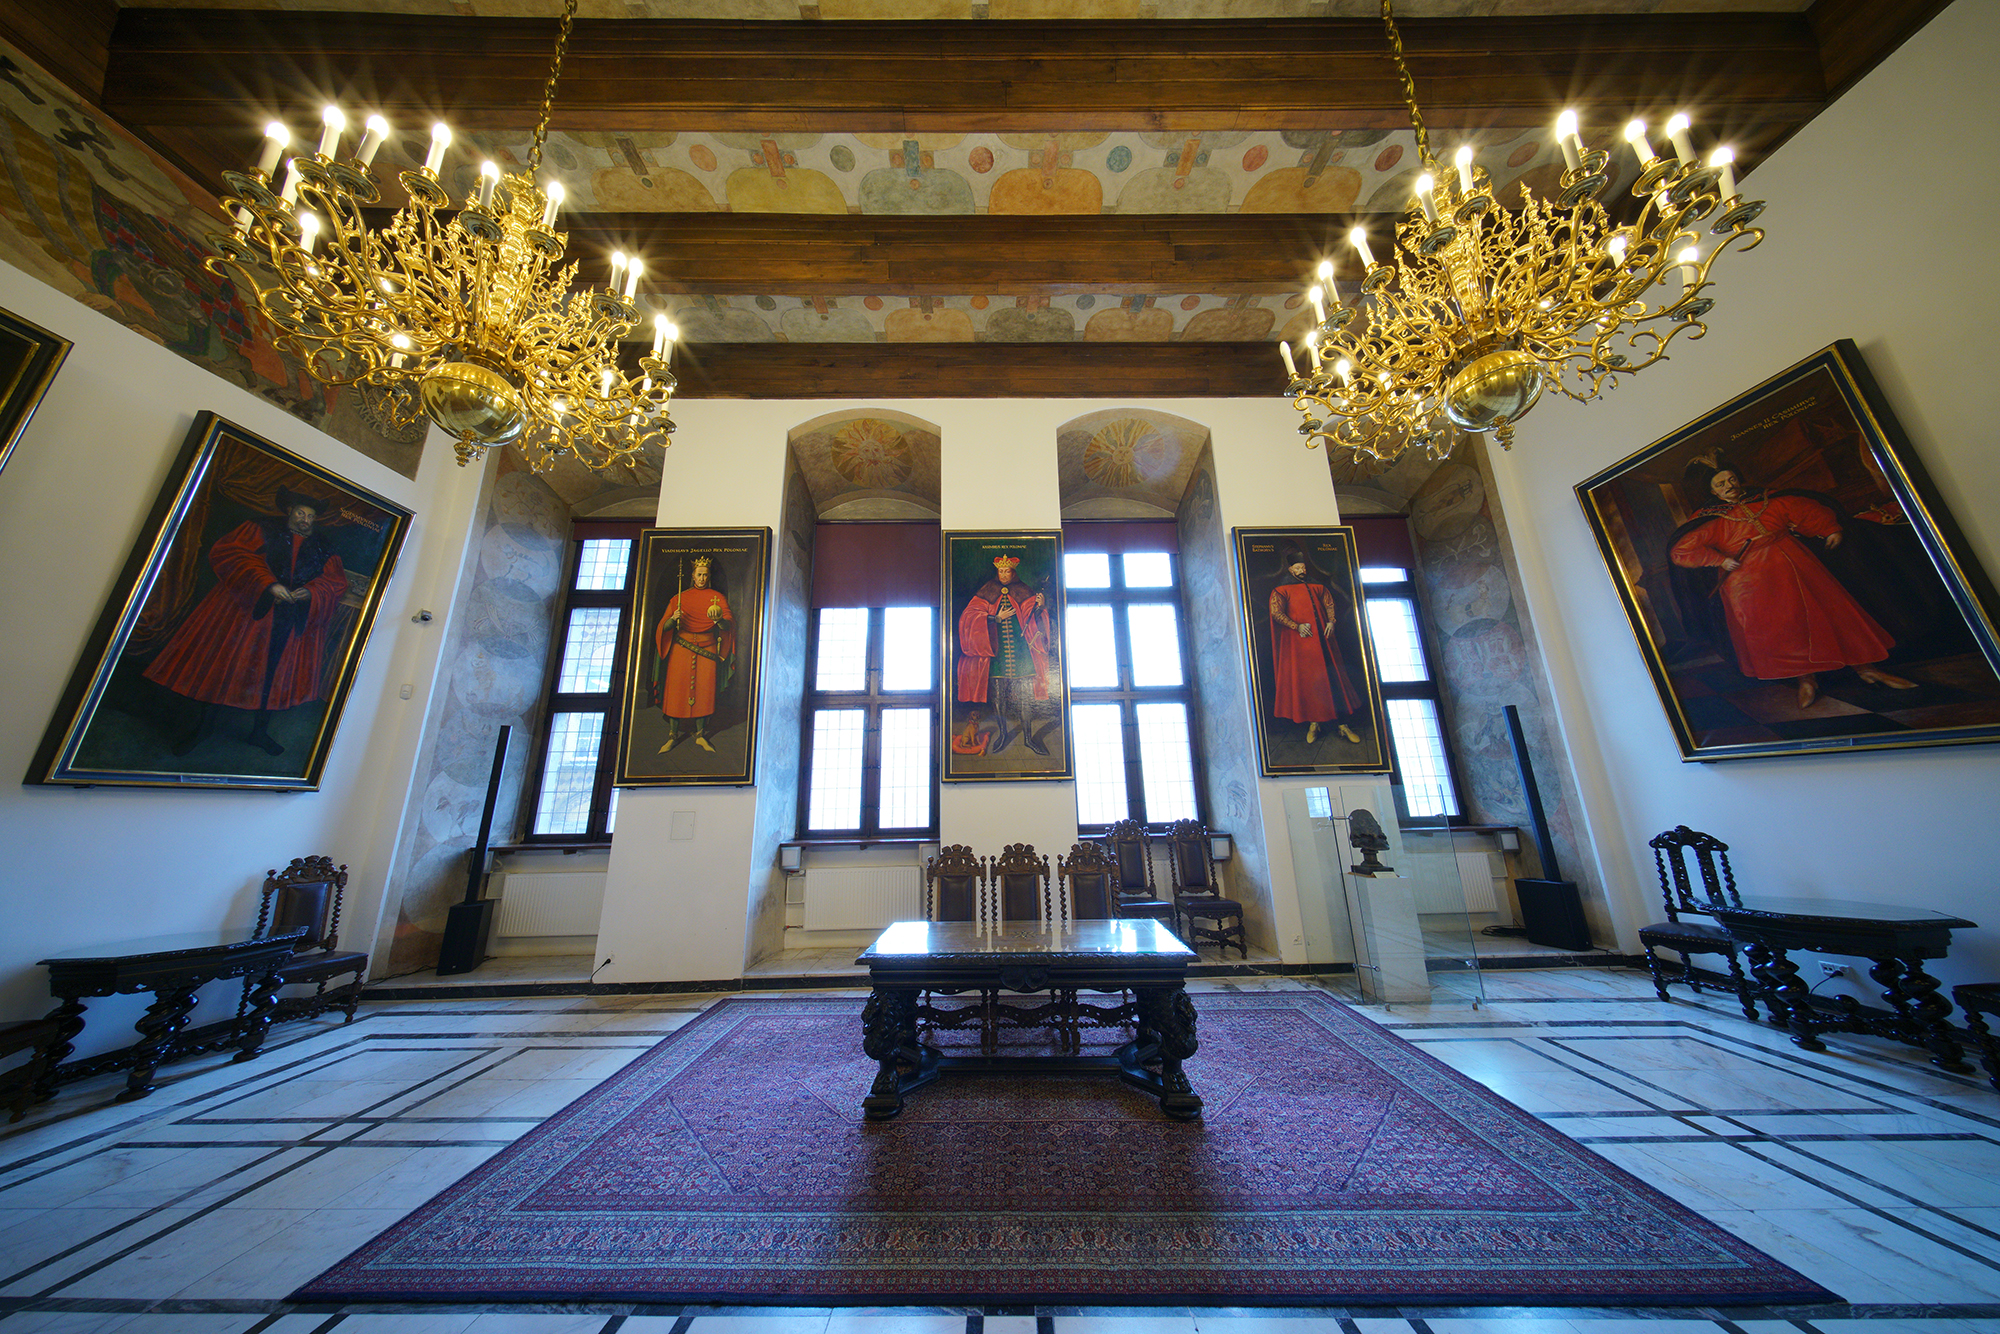 Wielka Sala Wety. Na ścianach wiszą obrazy królów Polski. Pośrodku, na dywanie stoją meble gdańskie - stół i trzy krzesła.